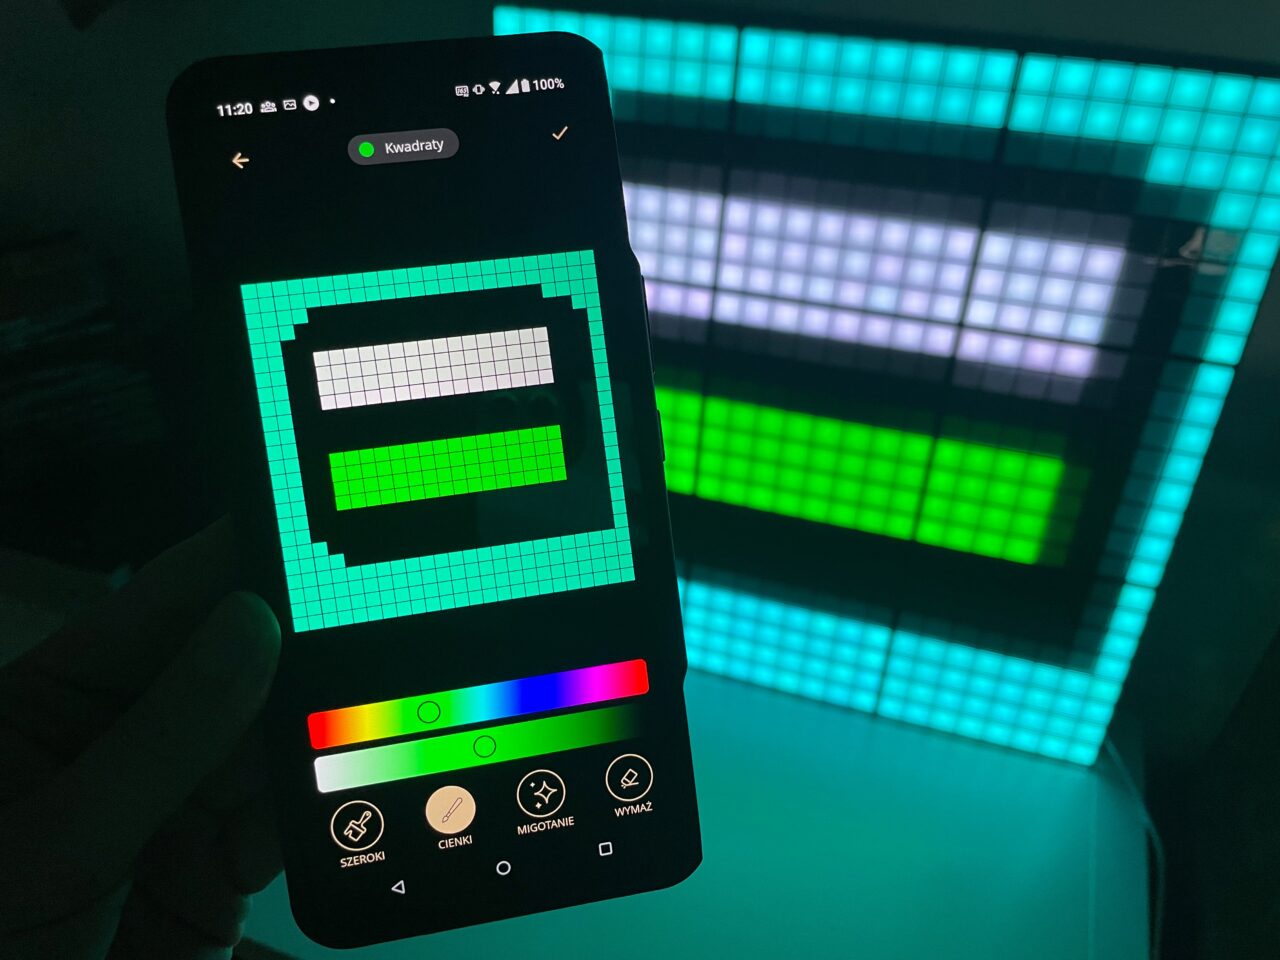 Dłoń trzymająca smartfon z otwartą aplikacją do tworzenia wzorów pikselowych nałączonym ekranem, pokazującym prostokątny wzór, odzwierciedlony na większym, podświetlanym panelu LED w tle.